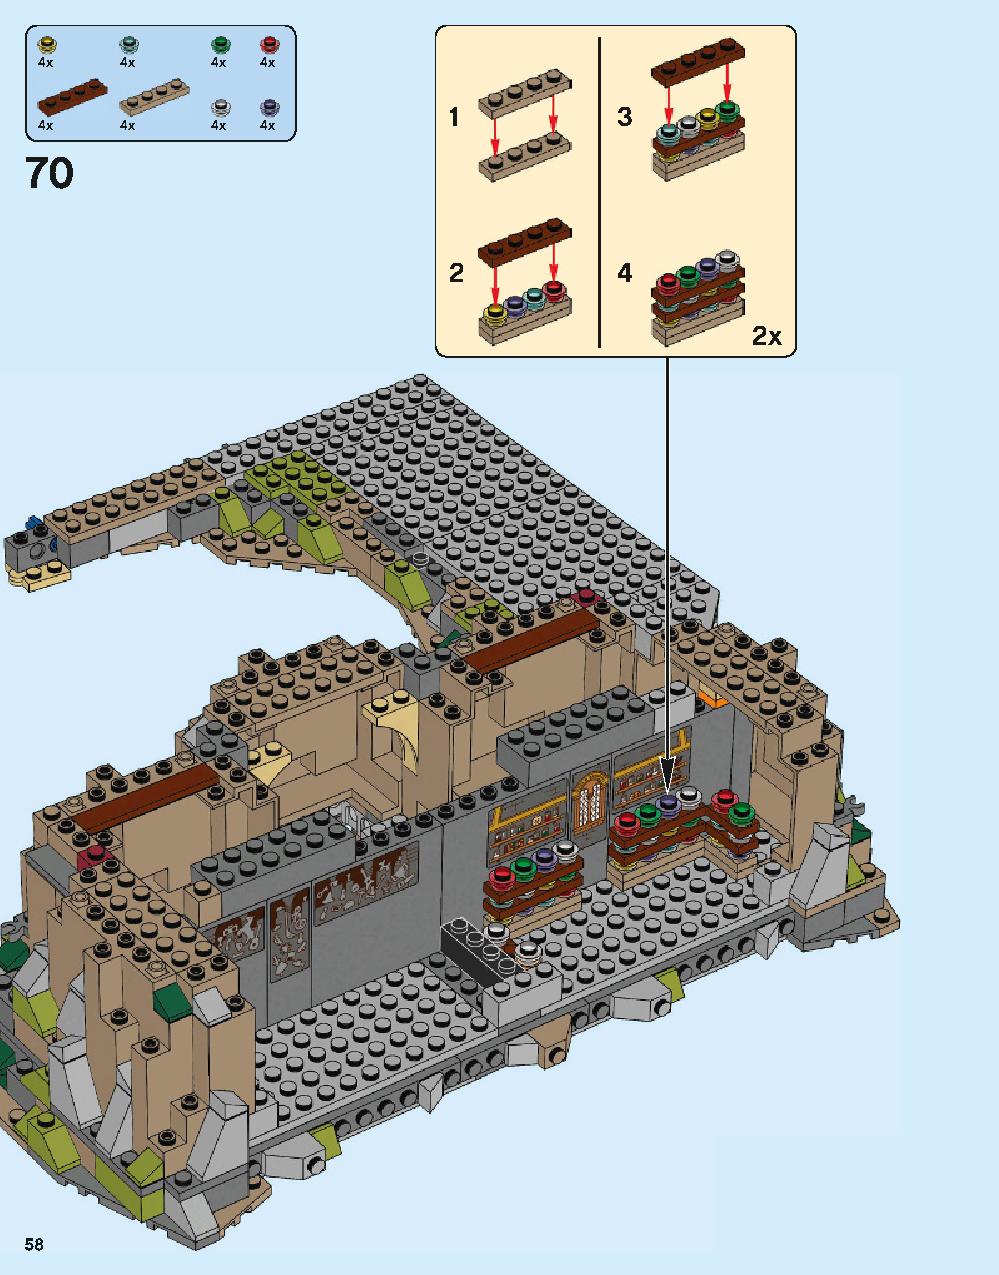 ホグワーツ城 71043 レゴの商品情報 レゴの説明書・組立方法 58 page